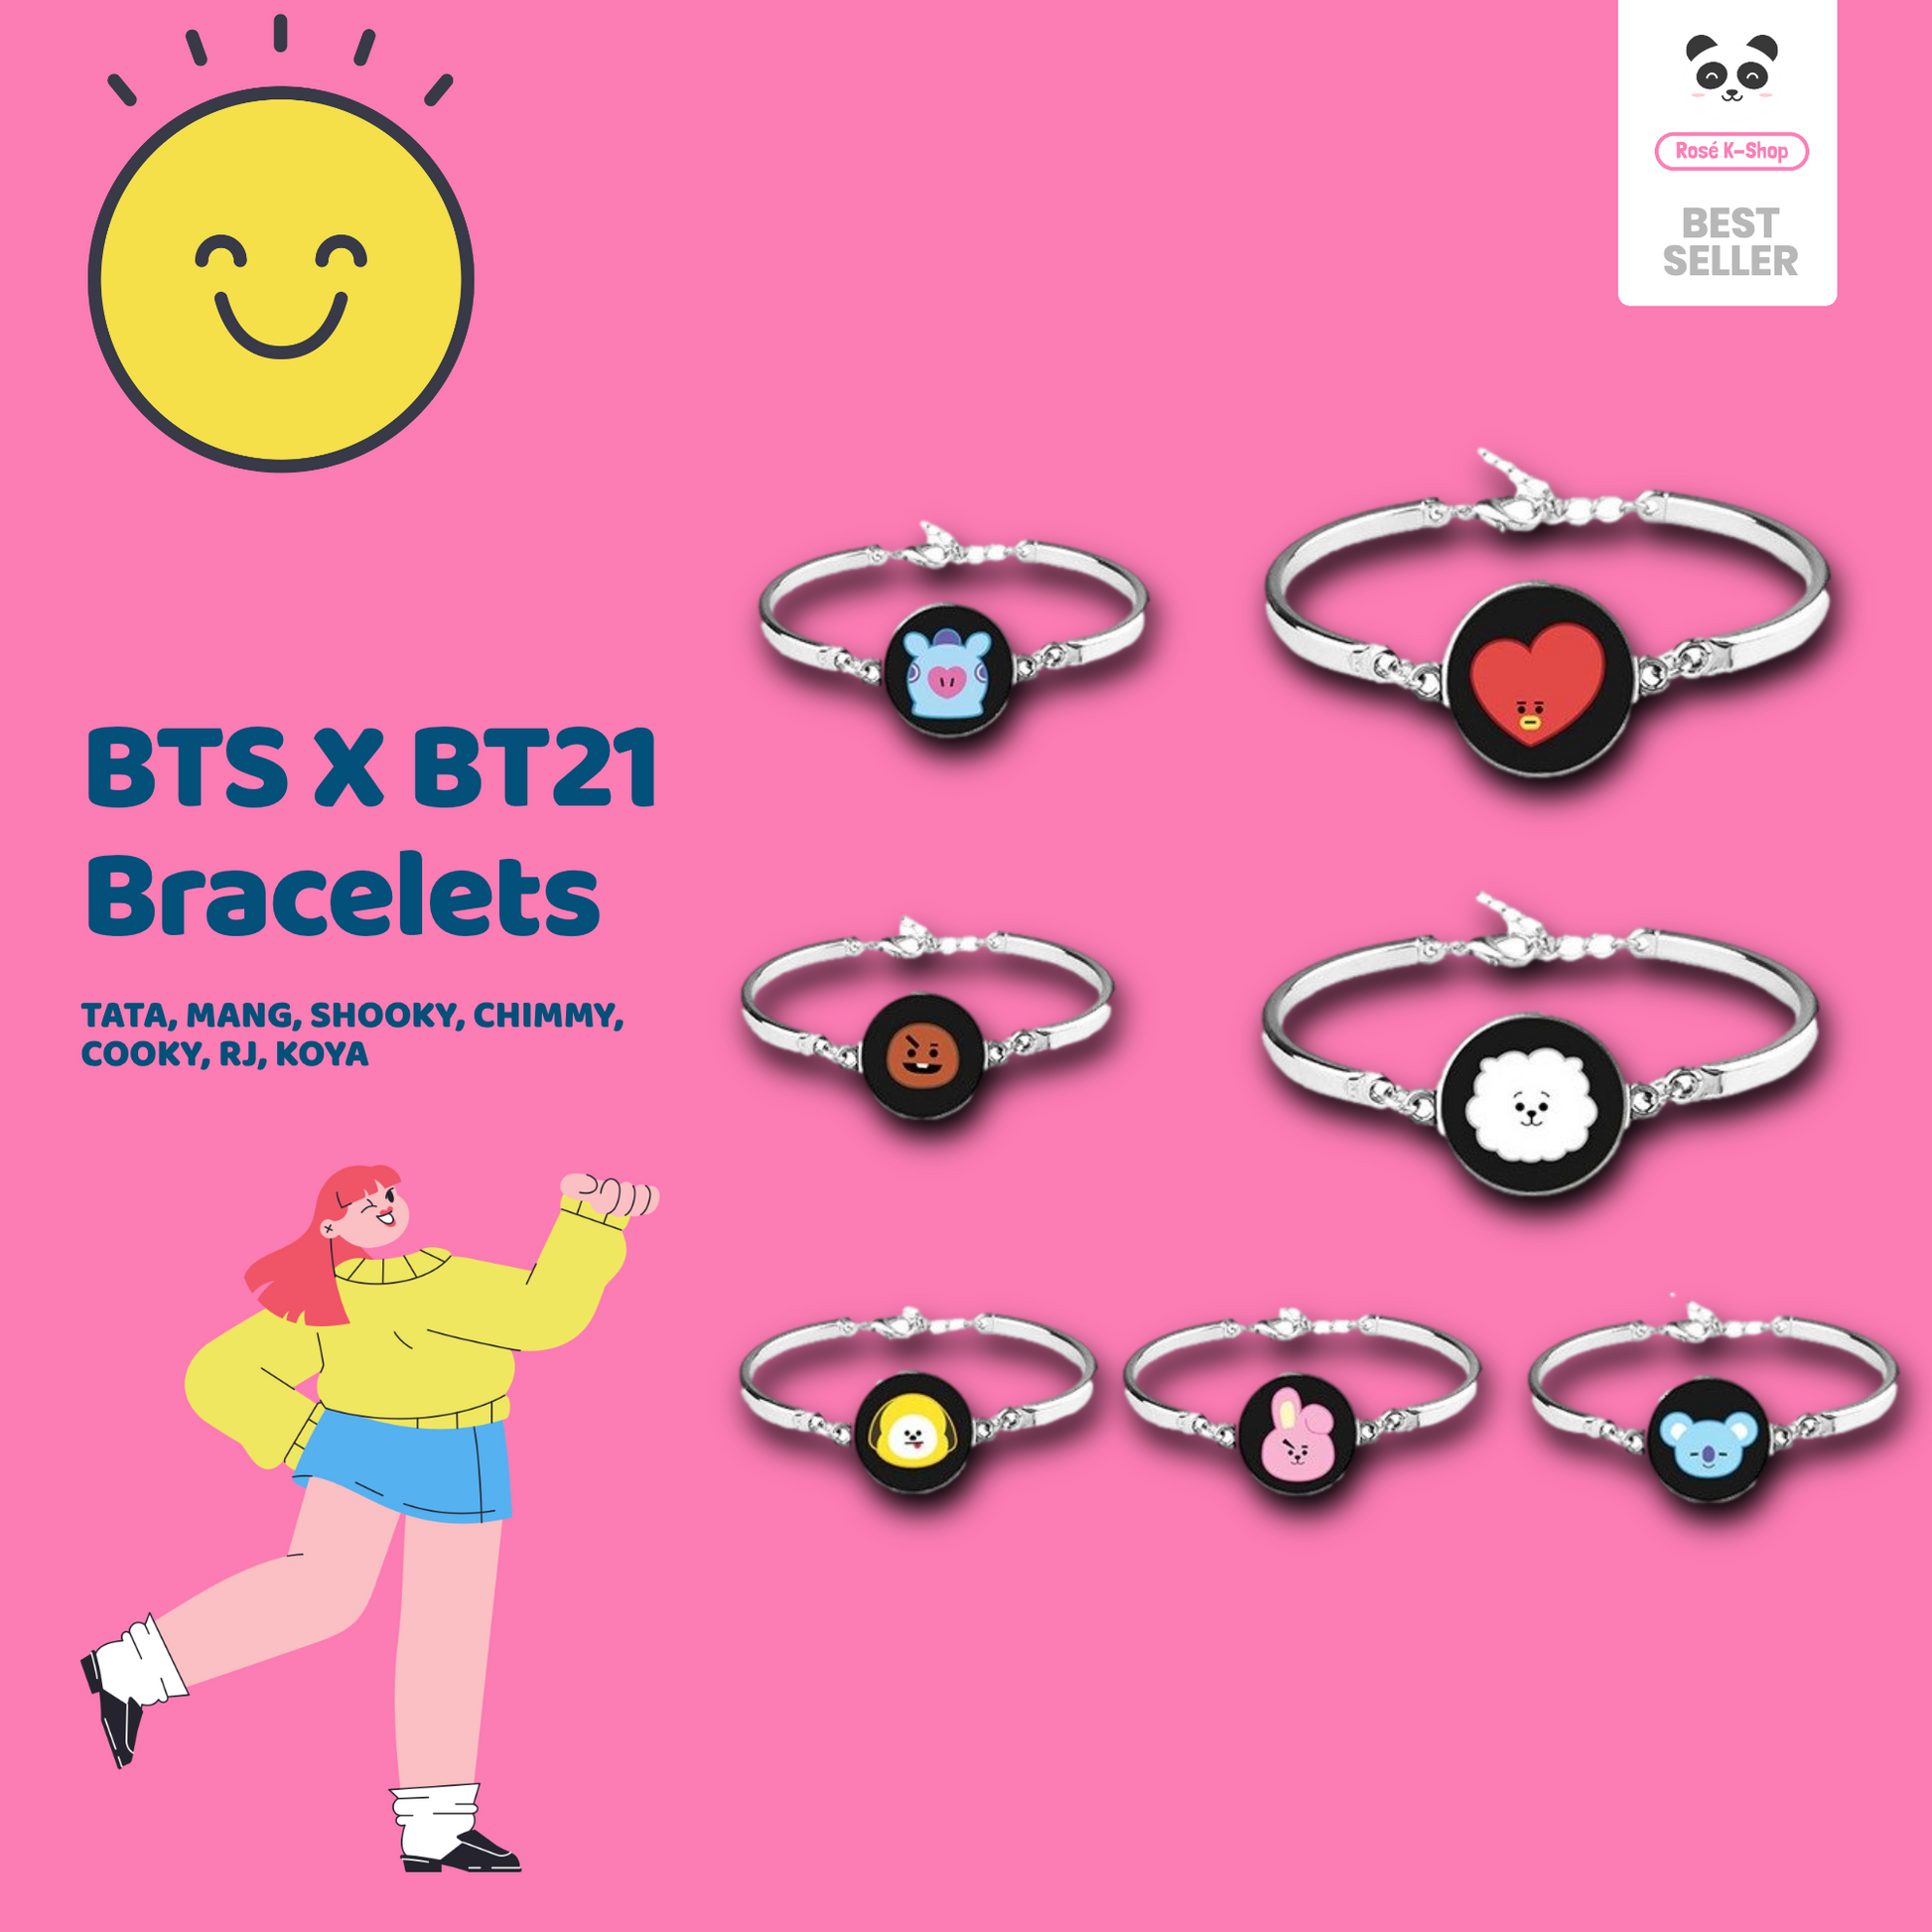 BTS X BT21 Bracelet Customized for V, Jimin, Jin, Jung Kook, SUGA, RM, j-hope - Rosé K-Shop